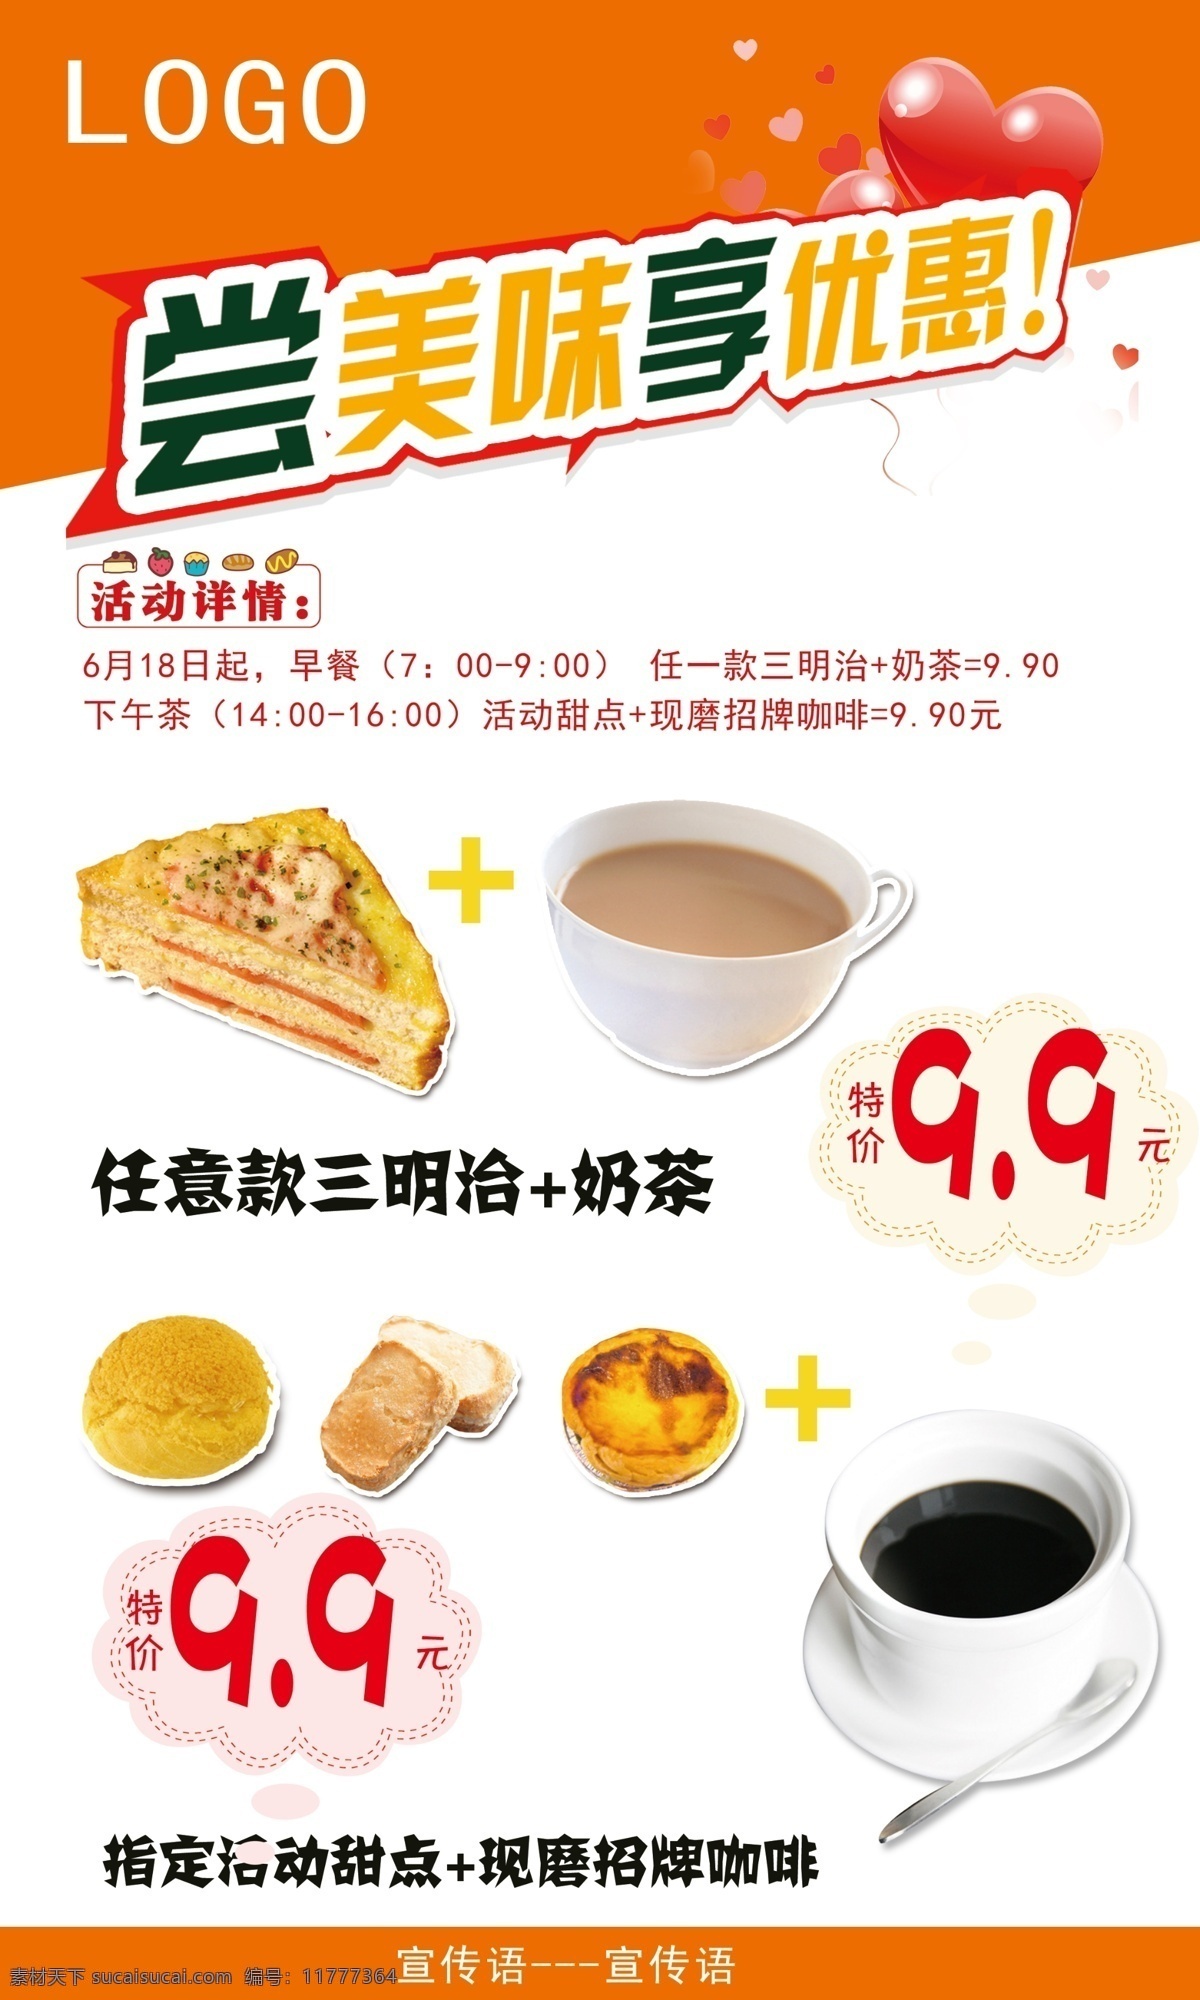 广告设计模板 咖啡 奶茶 三明治 甜点 源文件 早餐 海报 模板下载 早餐海报 矢量图 日常生活